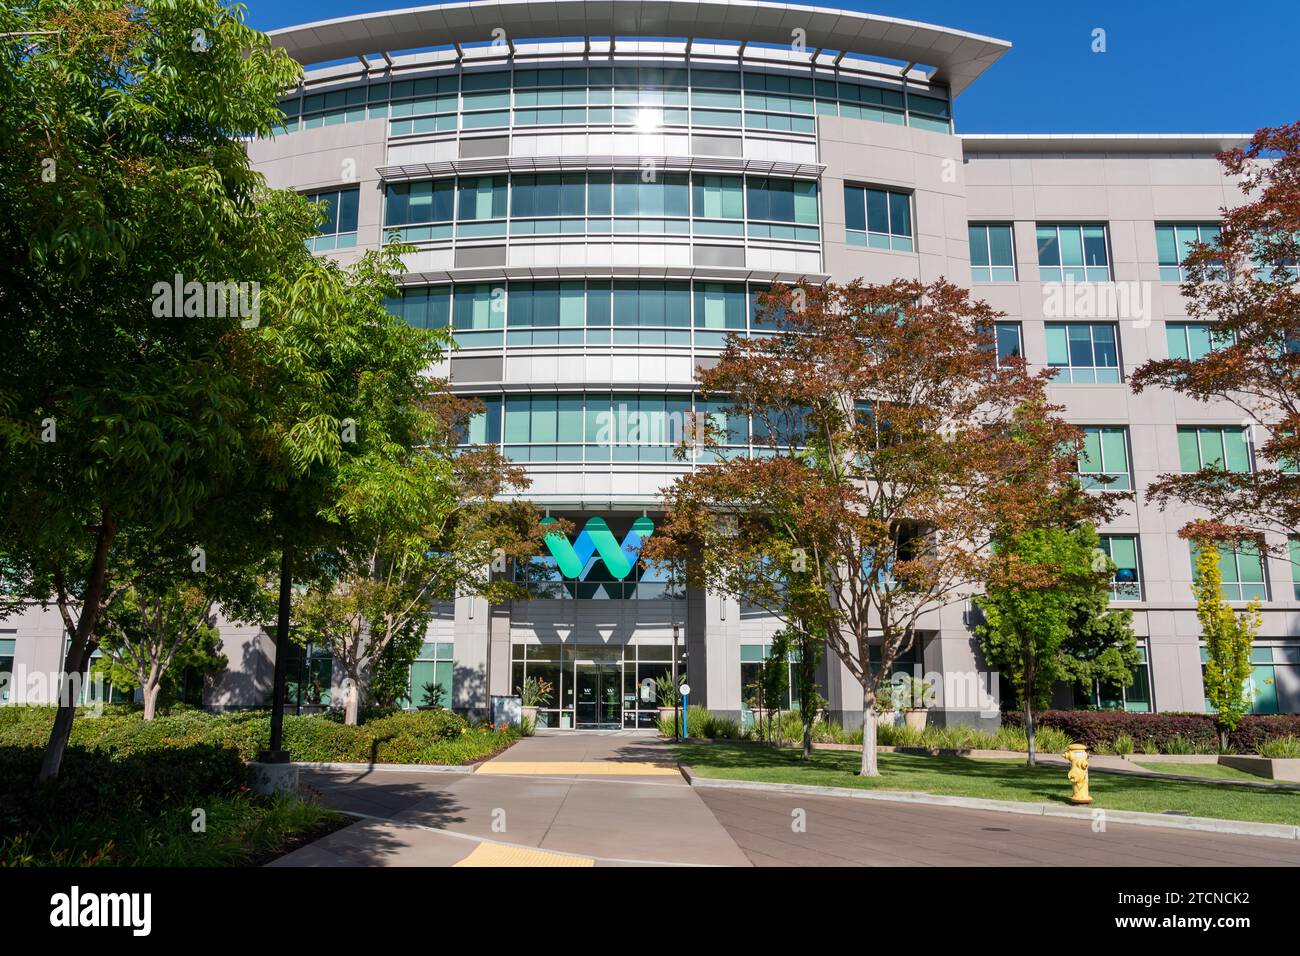 Immeuble de bureaux Waymo à Mountain View, Californie, États-Unis Banque D'Images